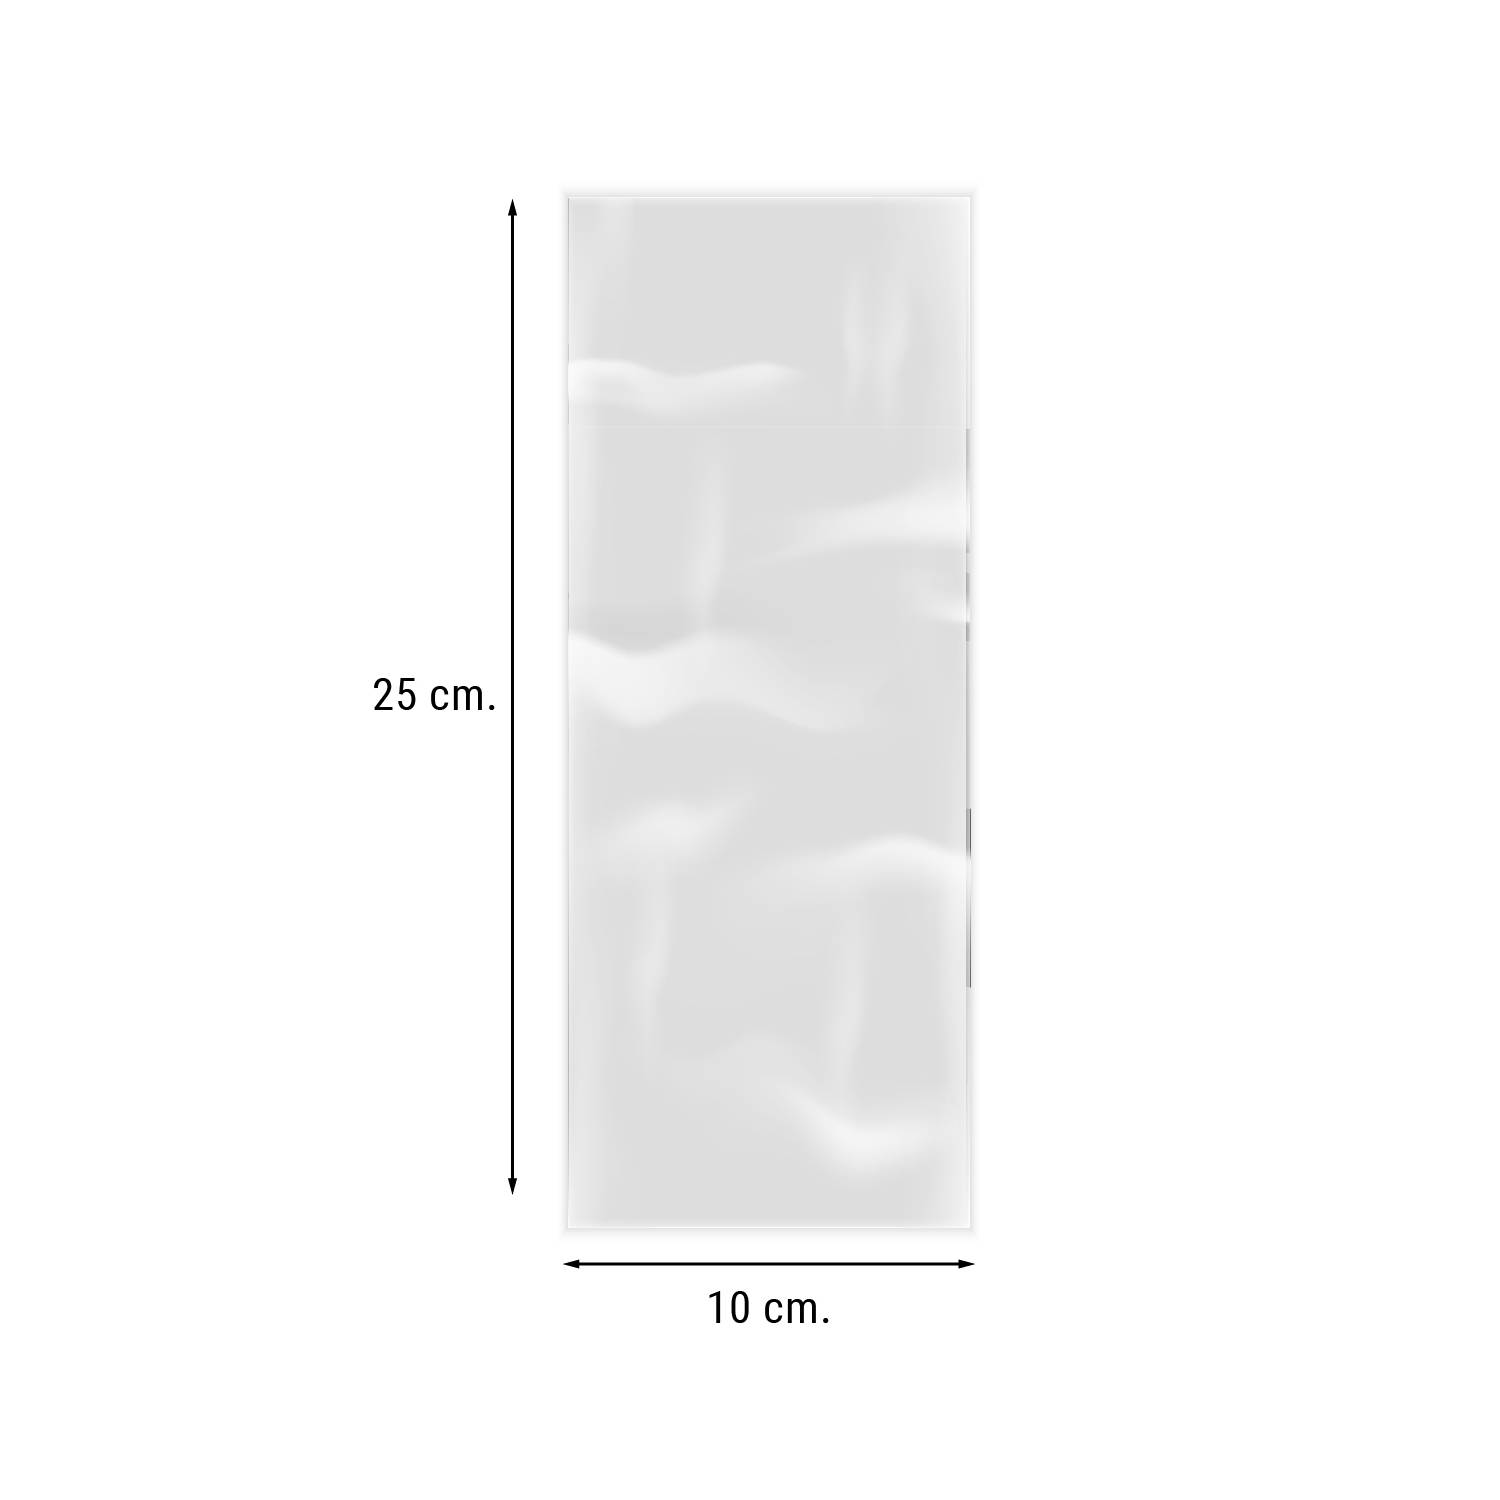 Bolsas de Polietileno sin Cierre Transparentes de 12´5 x 25 cm